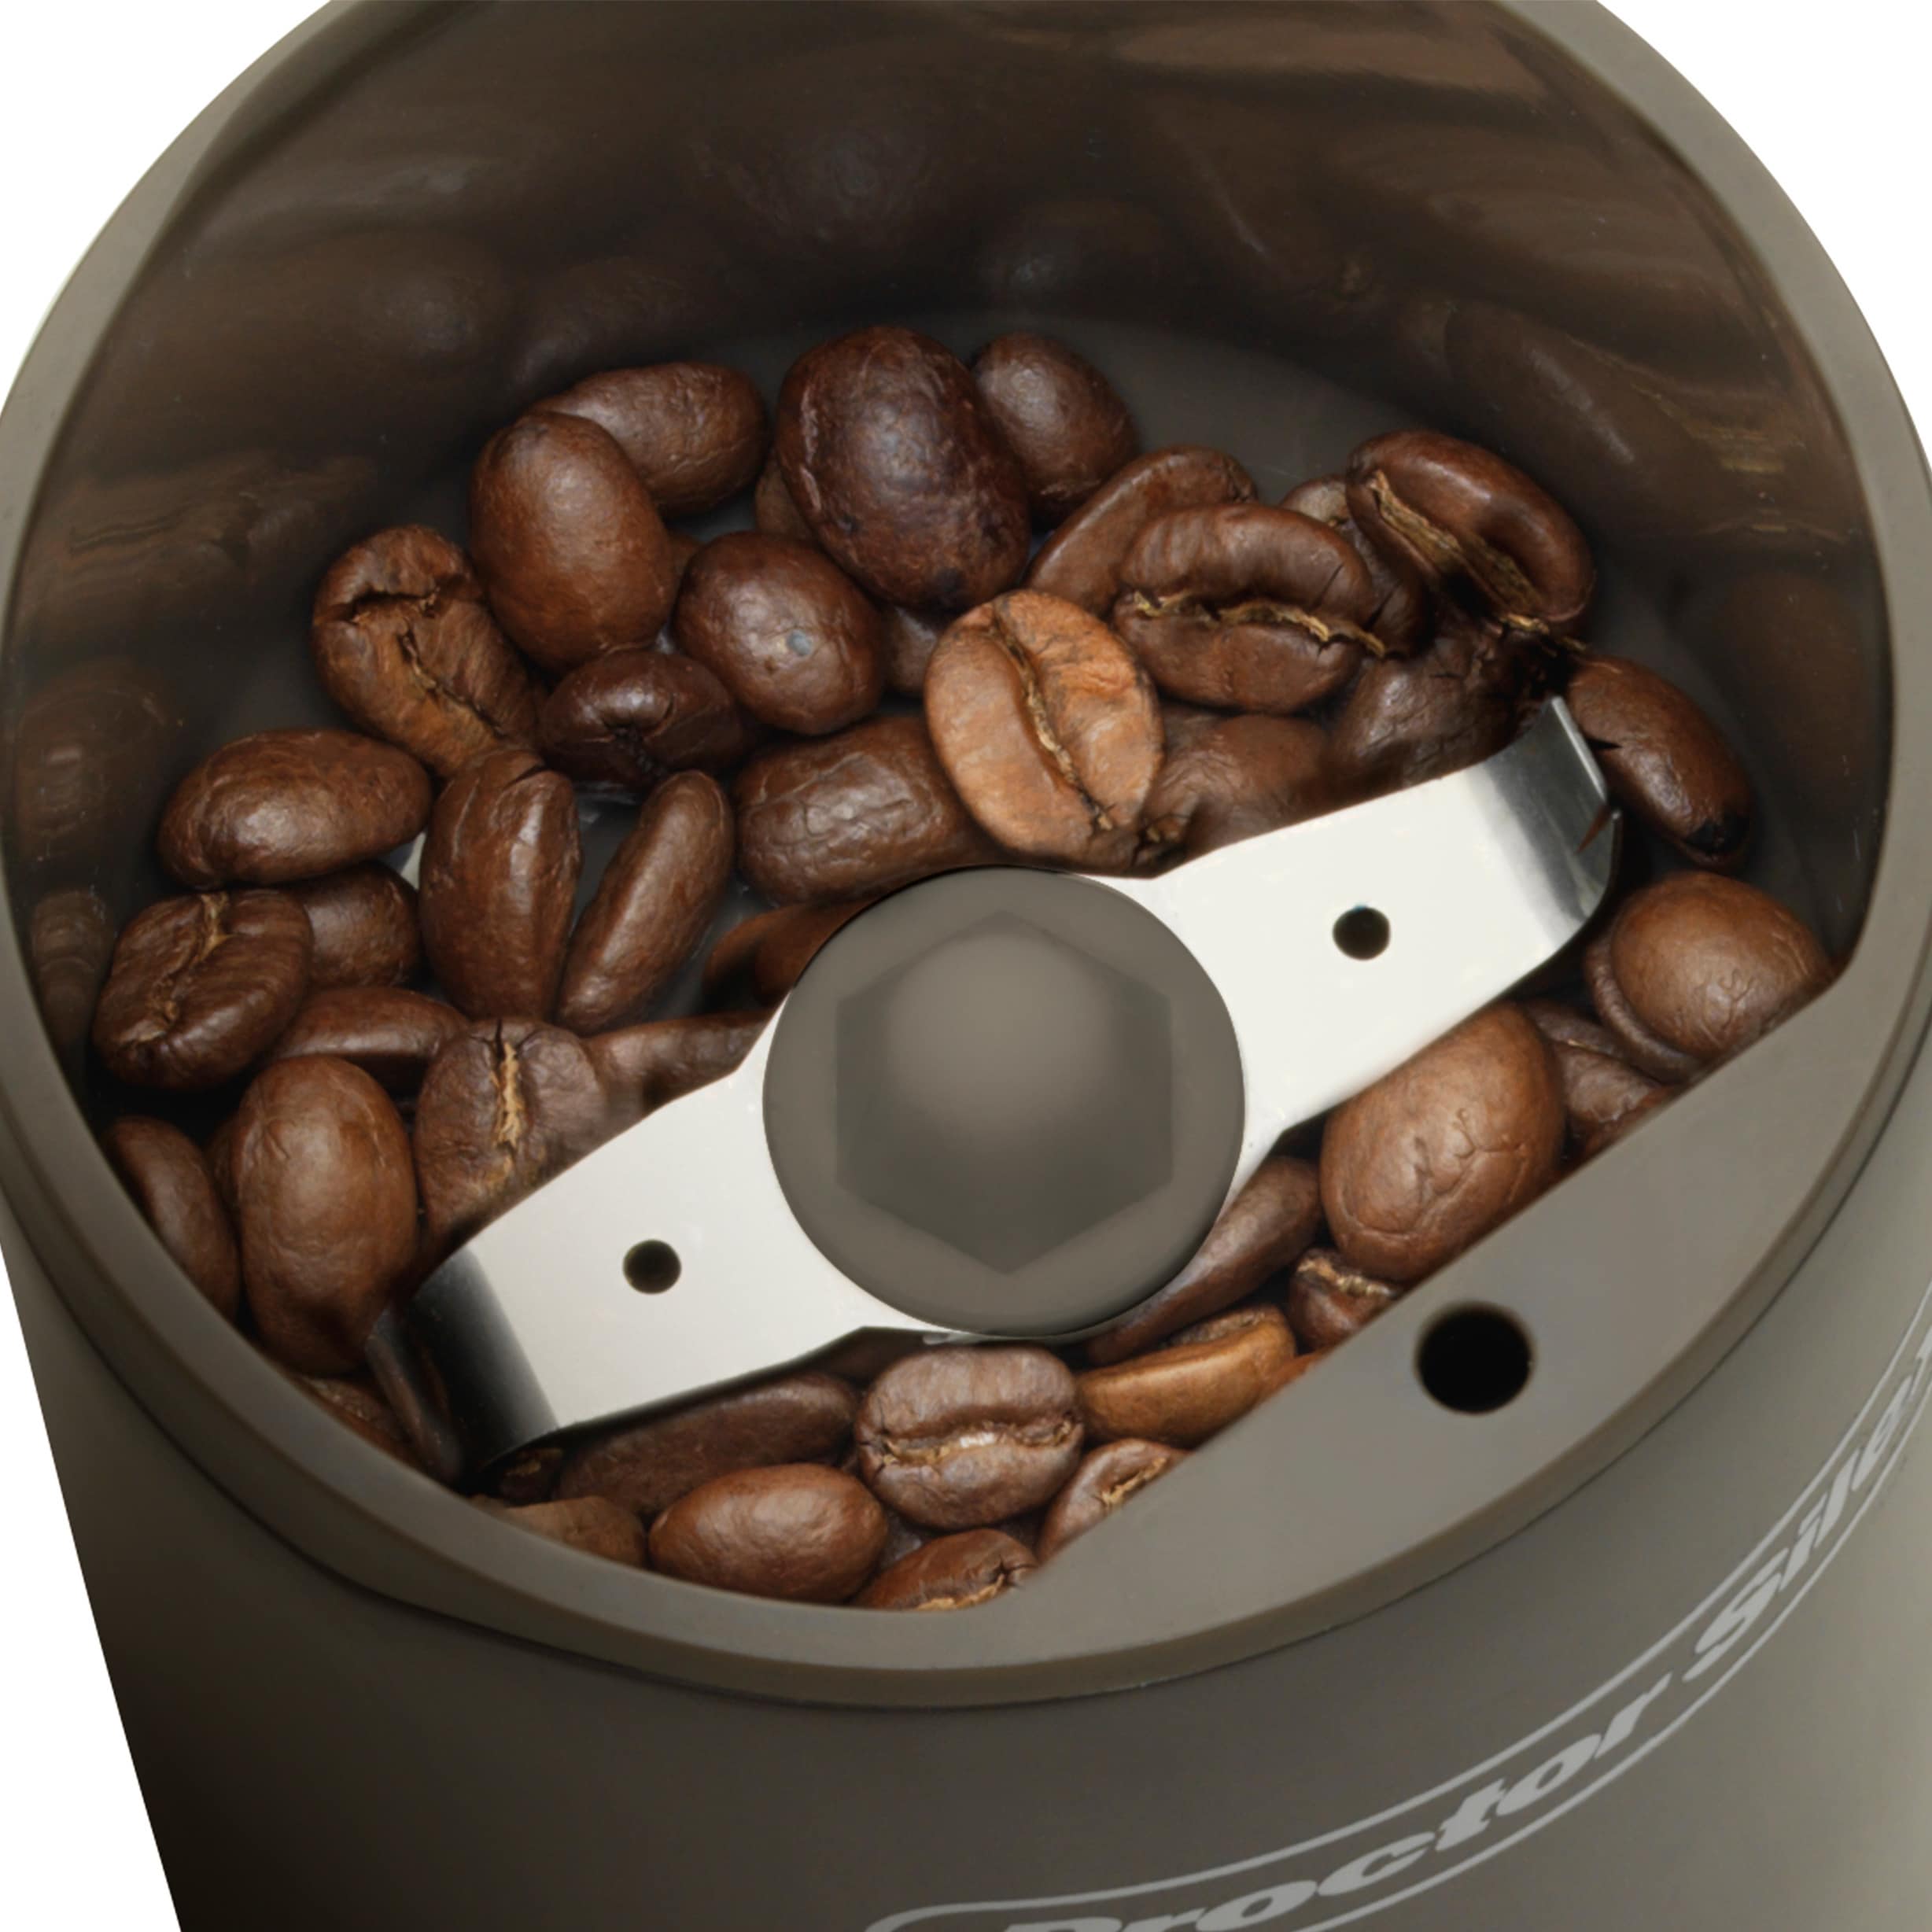 https://ak1.ostkcdn.com/images/products/16798532/Proctor-Silex-Fresh-Grind-Coffee-Grinder-a70ffdc6-020b-4ab7-af5a-bdcfb03b6c15.jpg